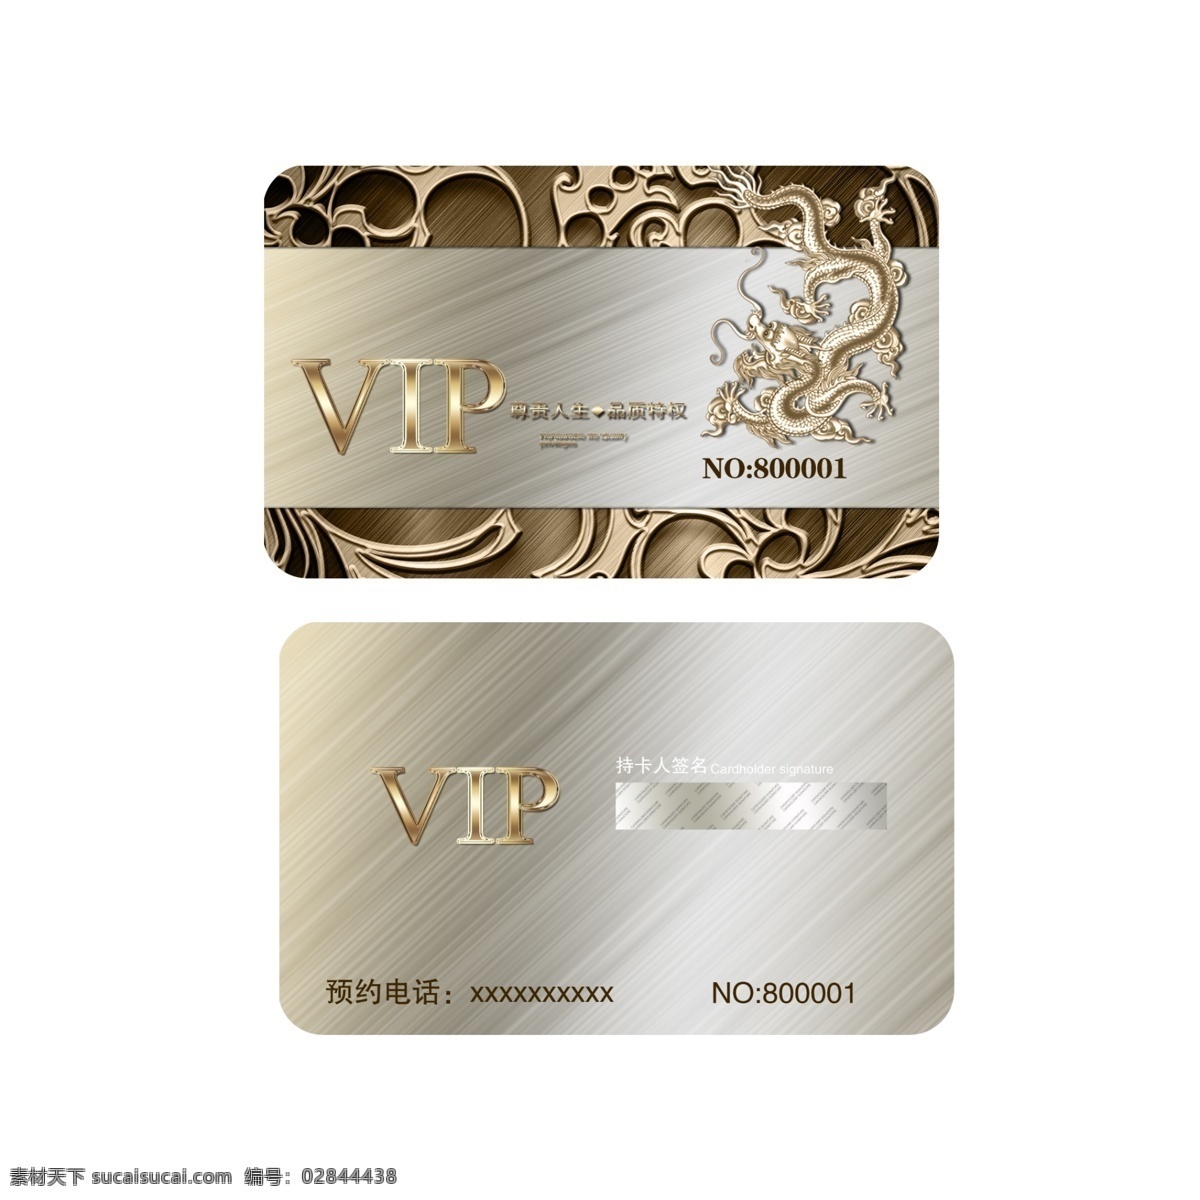 vip银卡 vip卡 银卡 会员 雕花 超市 磁卡 信誉分 积分卡 高端名片 活动卡片 大气 上档次 质感名片 质感卡片 质感会员卡 名片卡片